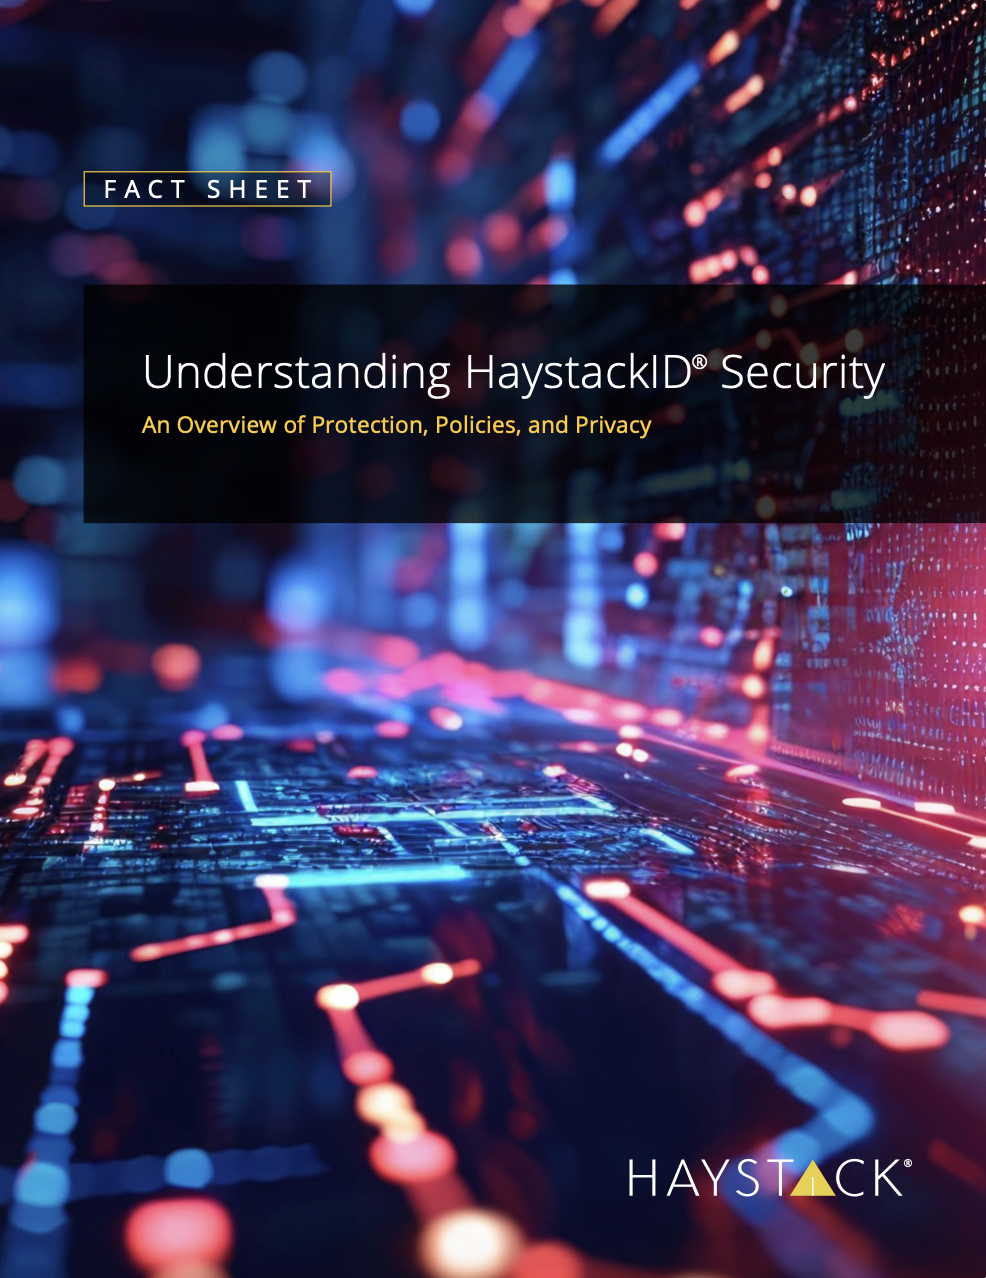 Understanding HaystackID Security